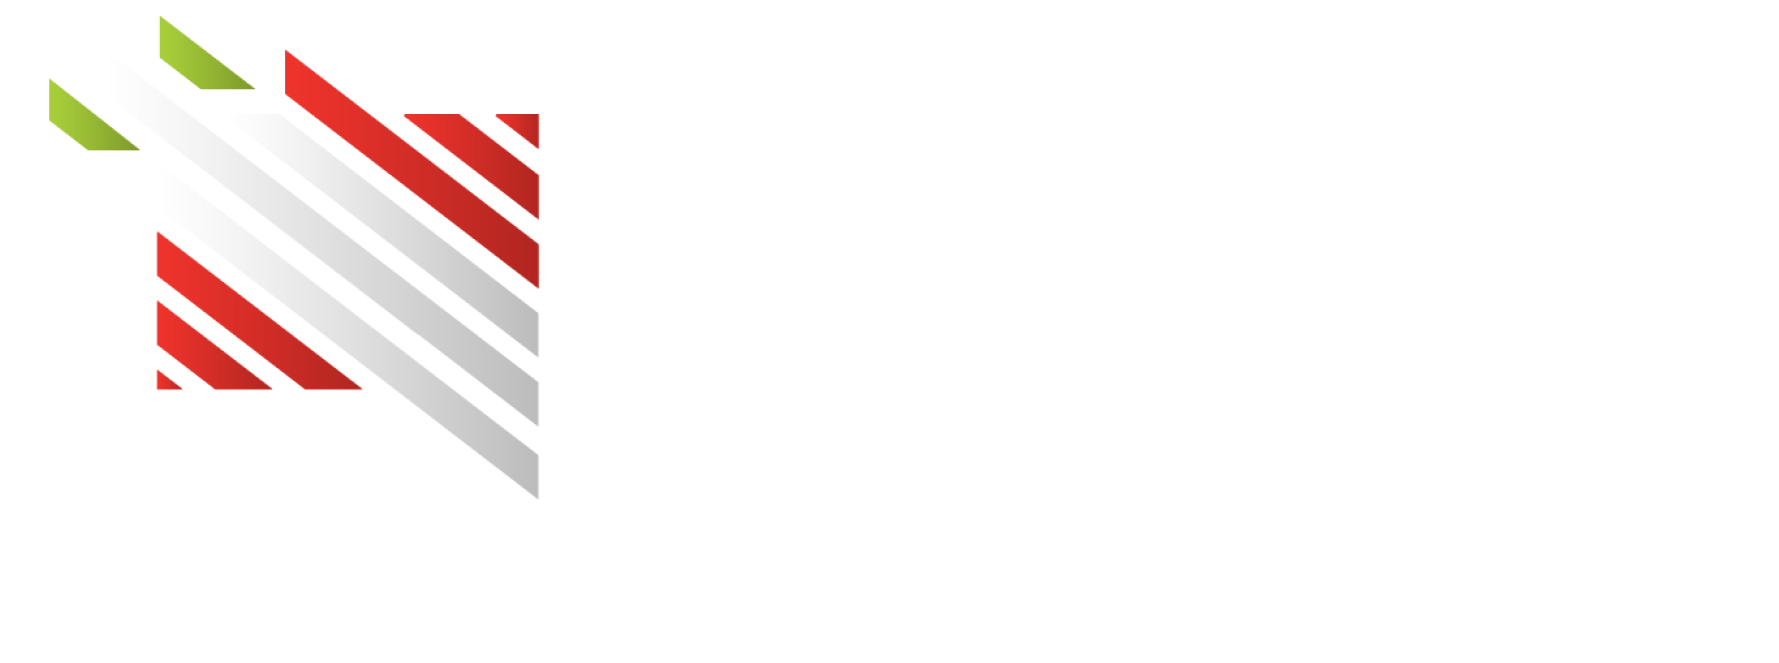 Cder logo